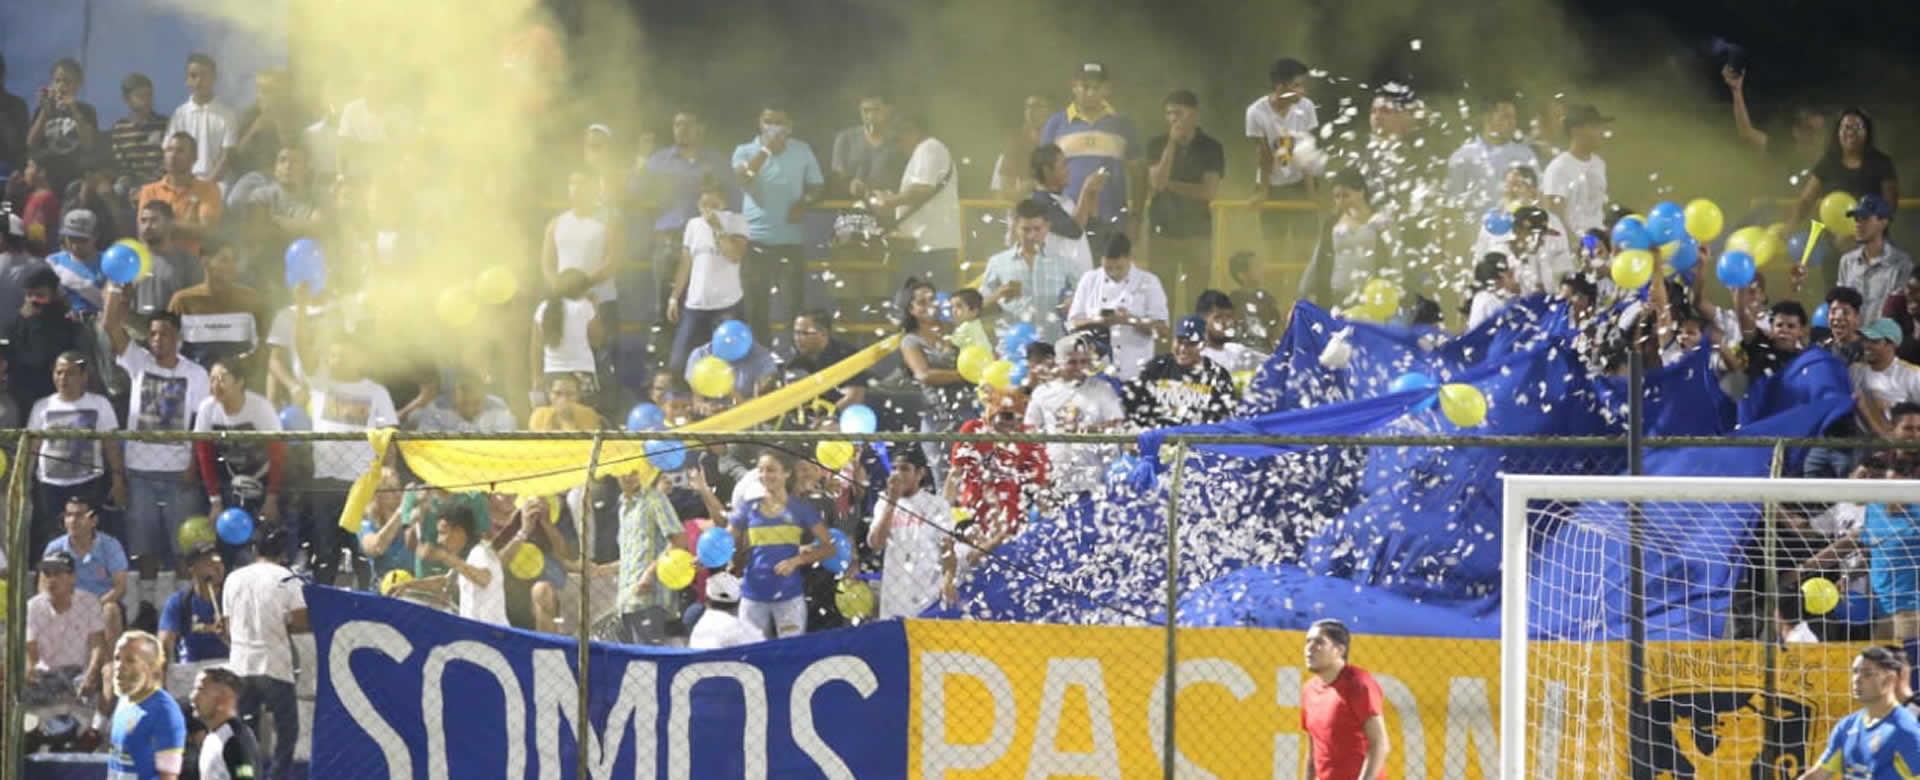 Final de Copa Nicaragua lleno de polémica